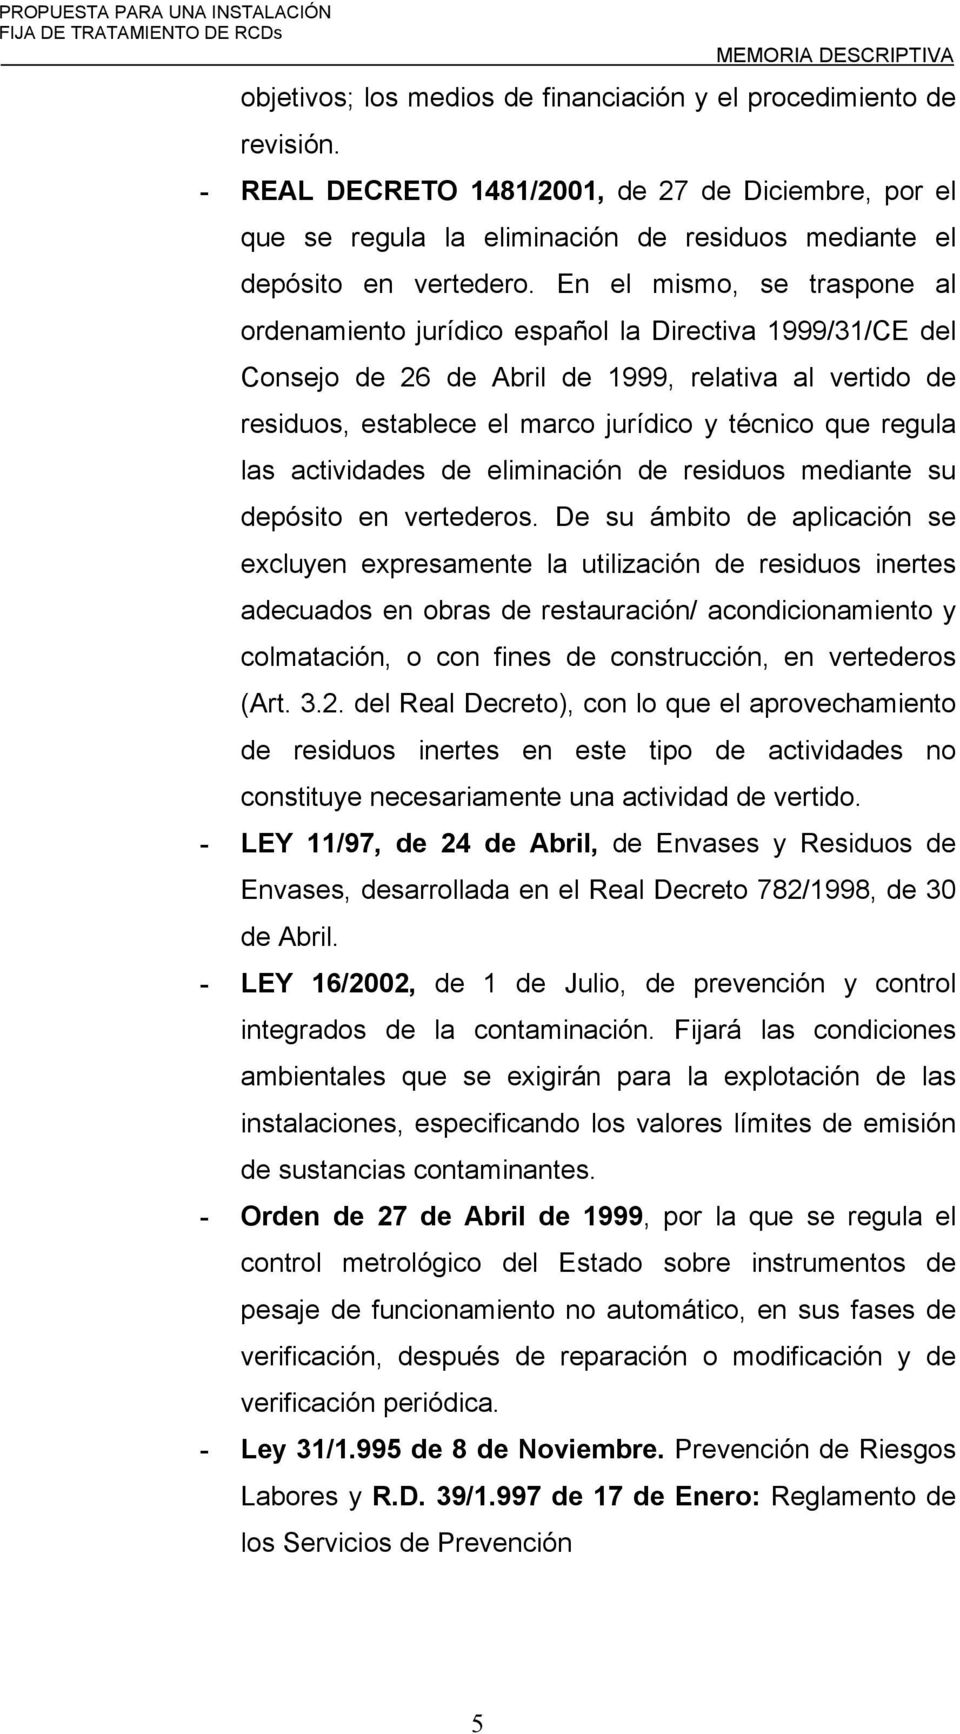 En el mismo, se traspone al ordenamiento jurídico español la Directiva 1999/31/CE del Consejo de 26 de Abril de 1999, relativa al vertido de residuos, establece el marco jurídico y técnico que regula